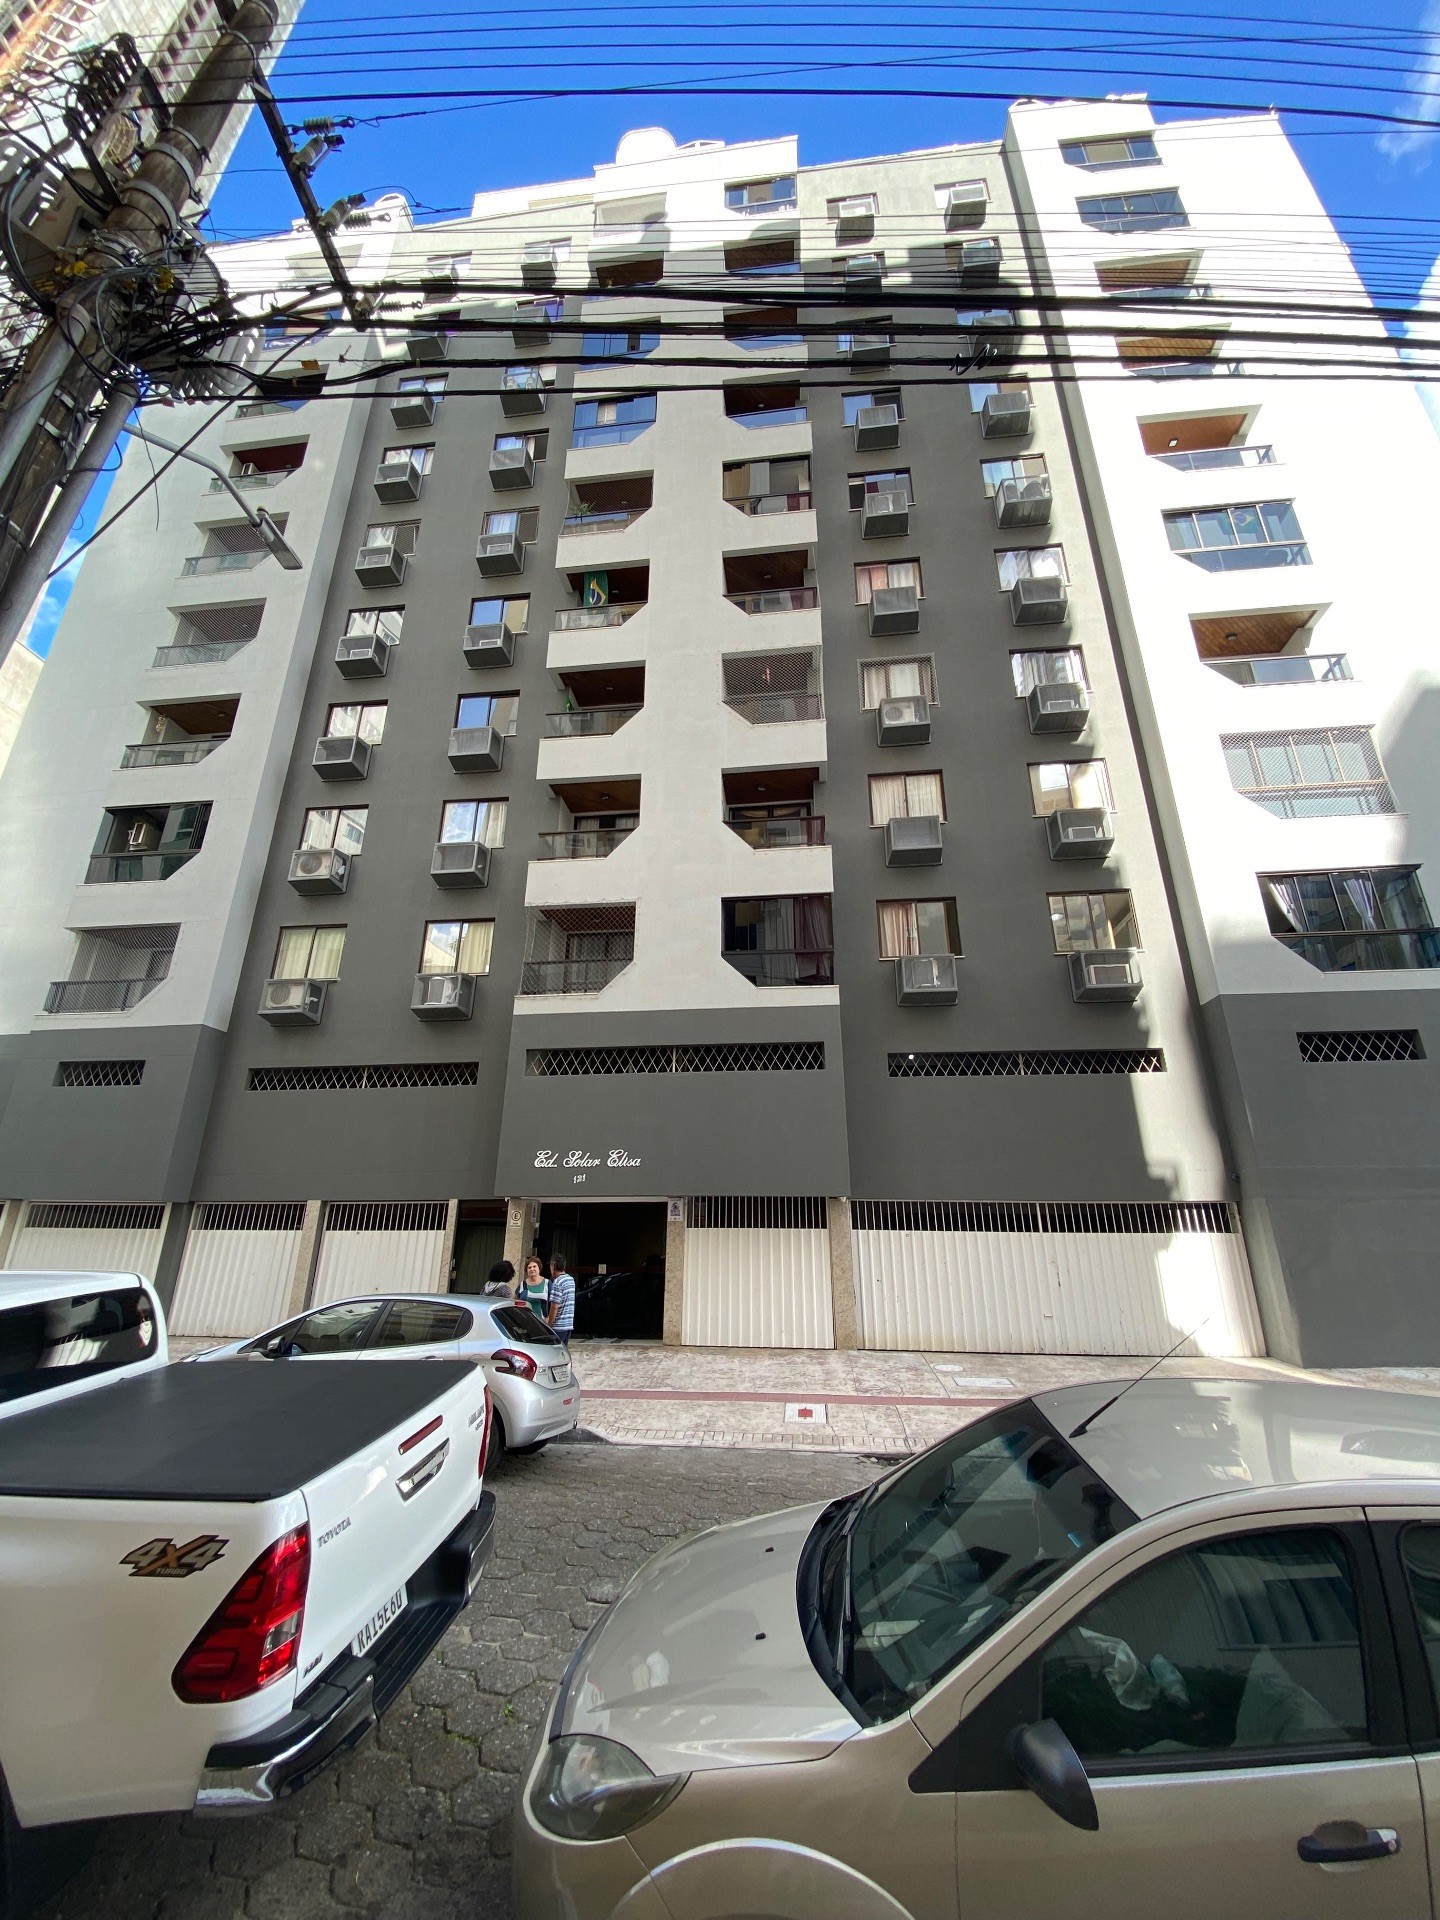 Apartamento Mobiliado Com 2 Dormitórios ao lado do Passeio San Miguel em Balneário Camboriú - SC.